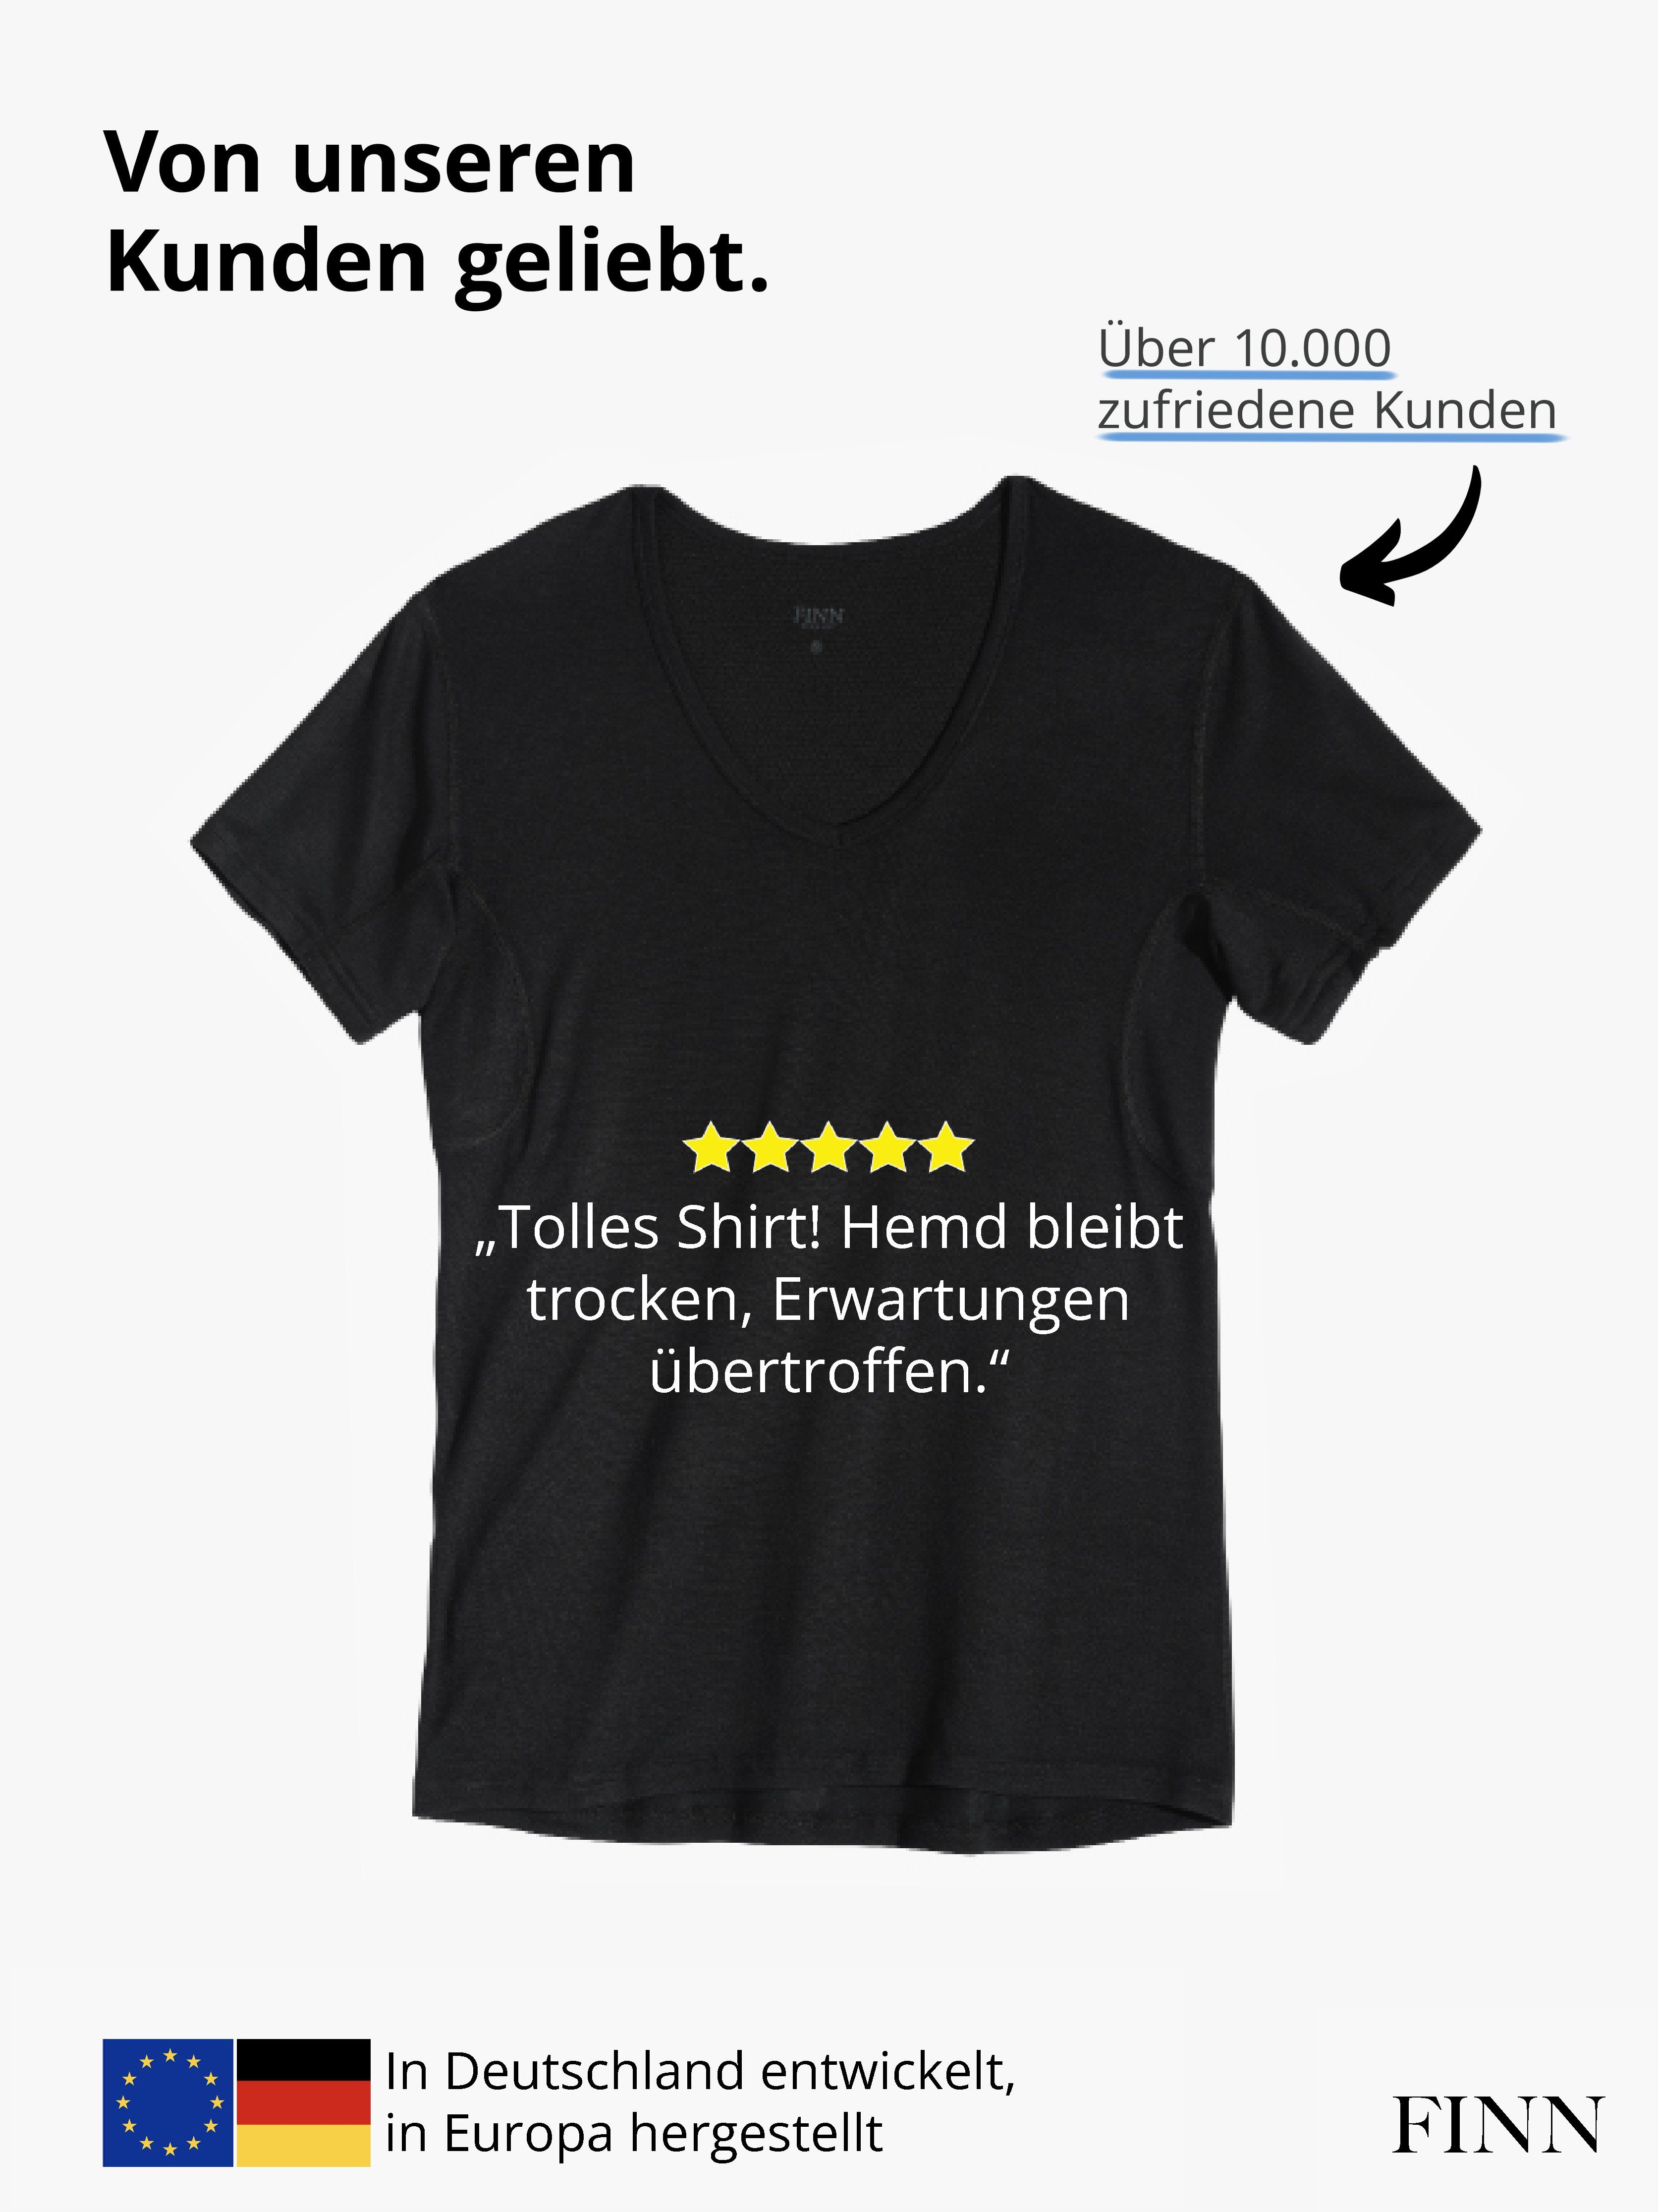 vor FINN Schweißflecken, Unterhemd Schwarz 100% Herren Unterhemd garantierte Schutz Design Wirkung Anti-Schweiß